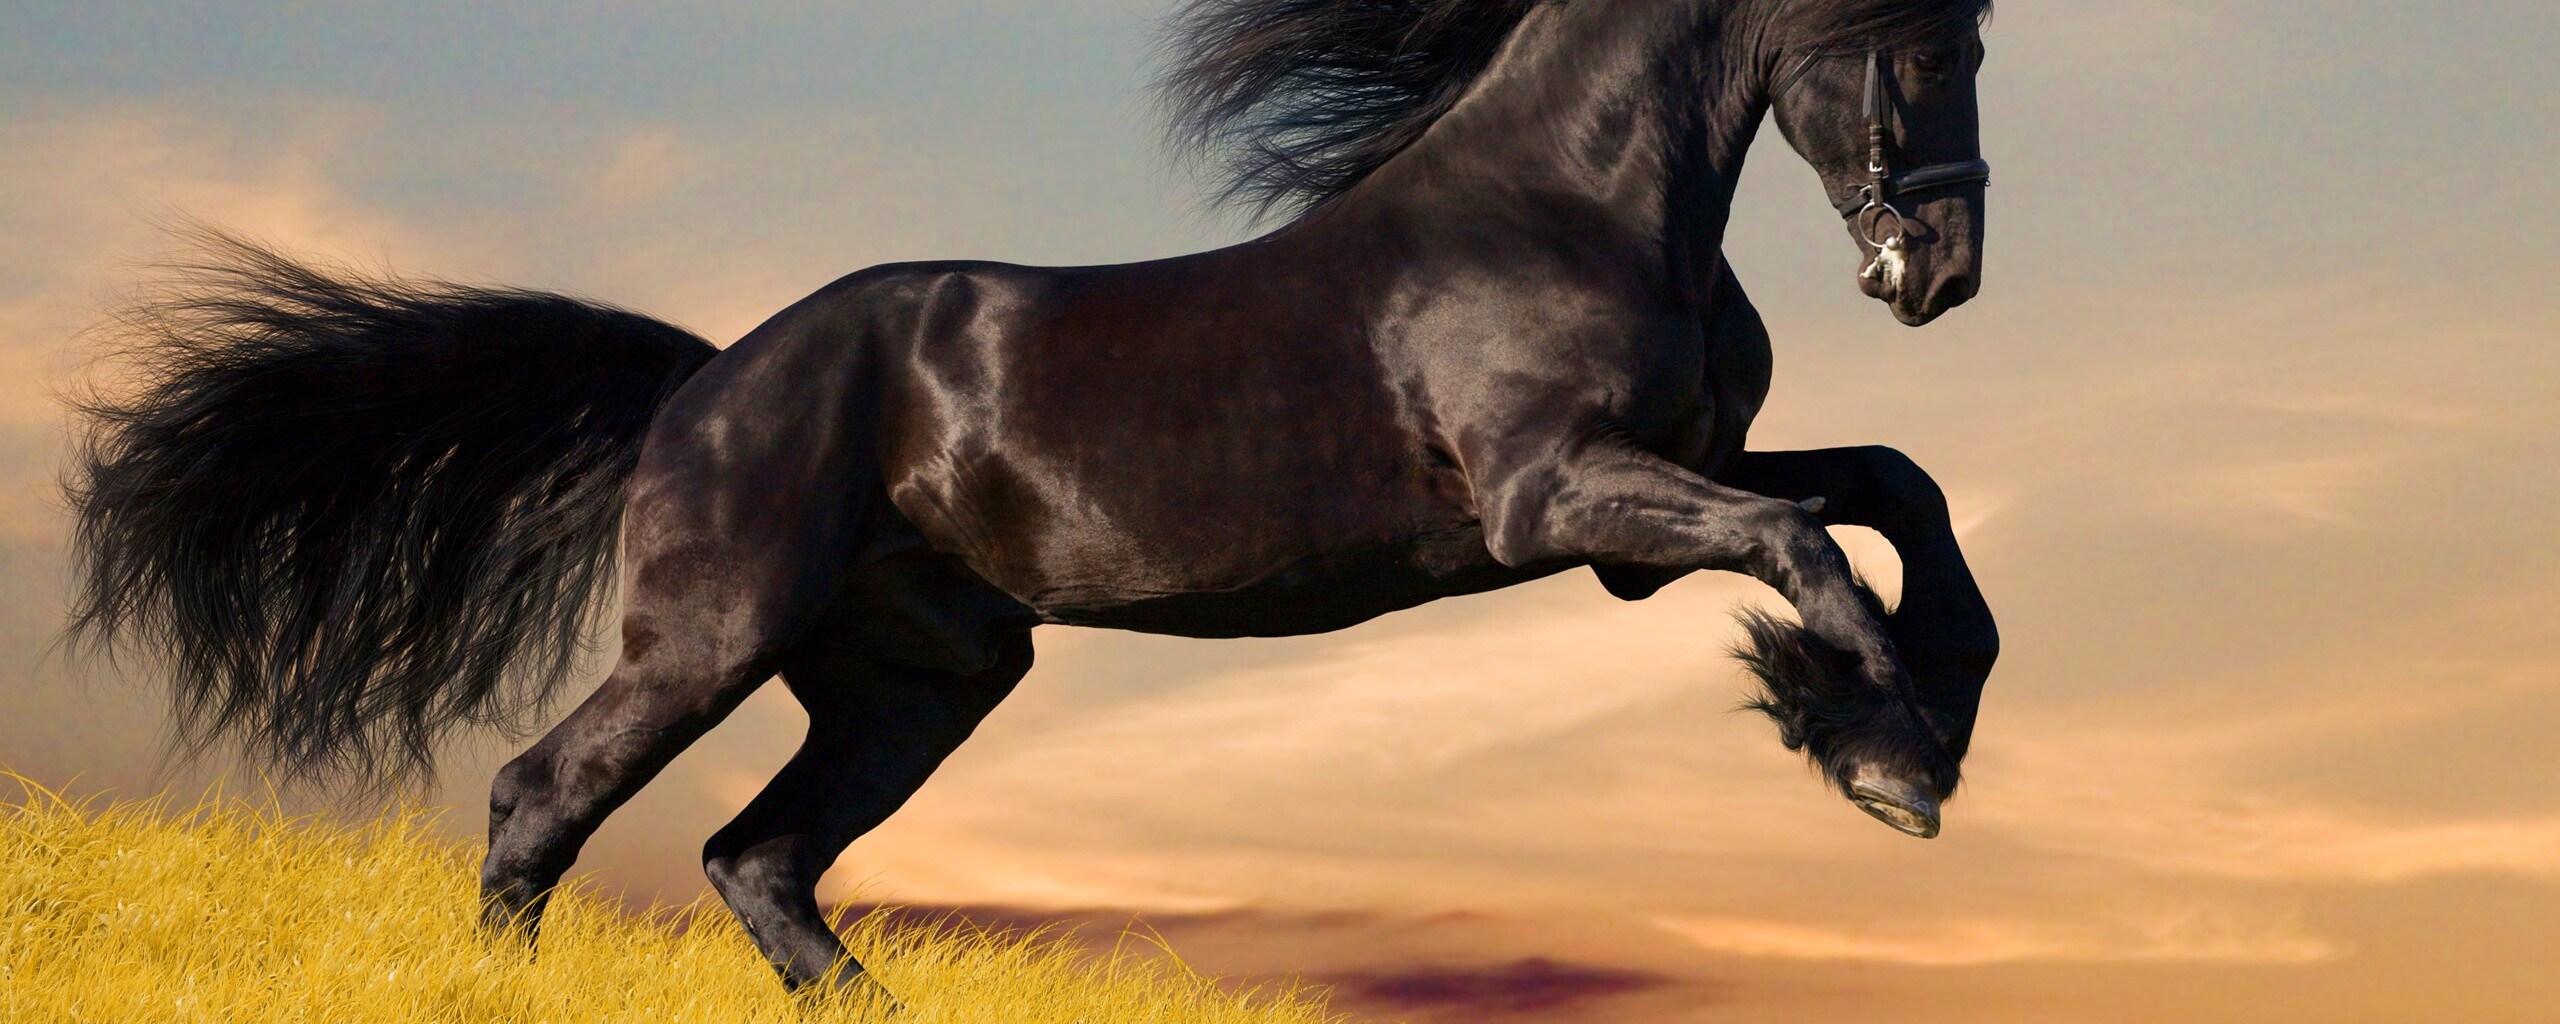 лошади поле черные horses field black бесплатно